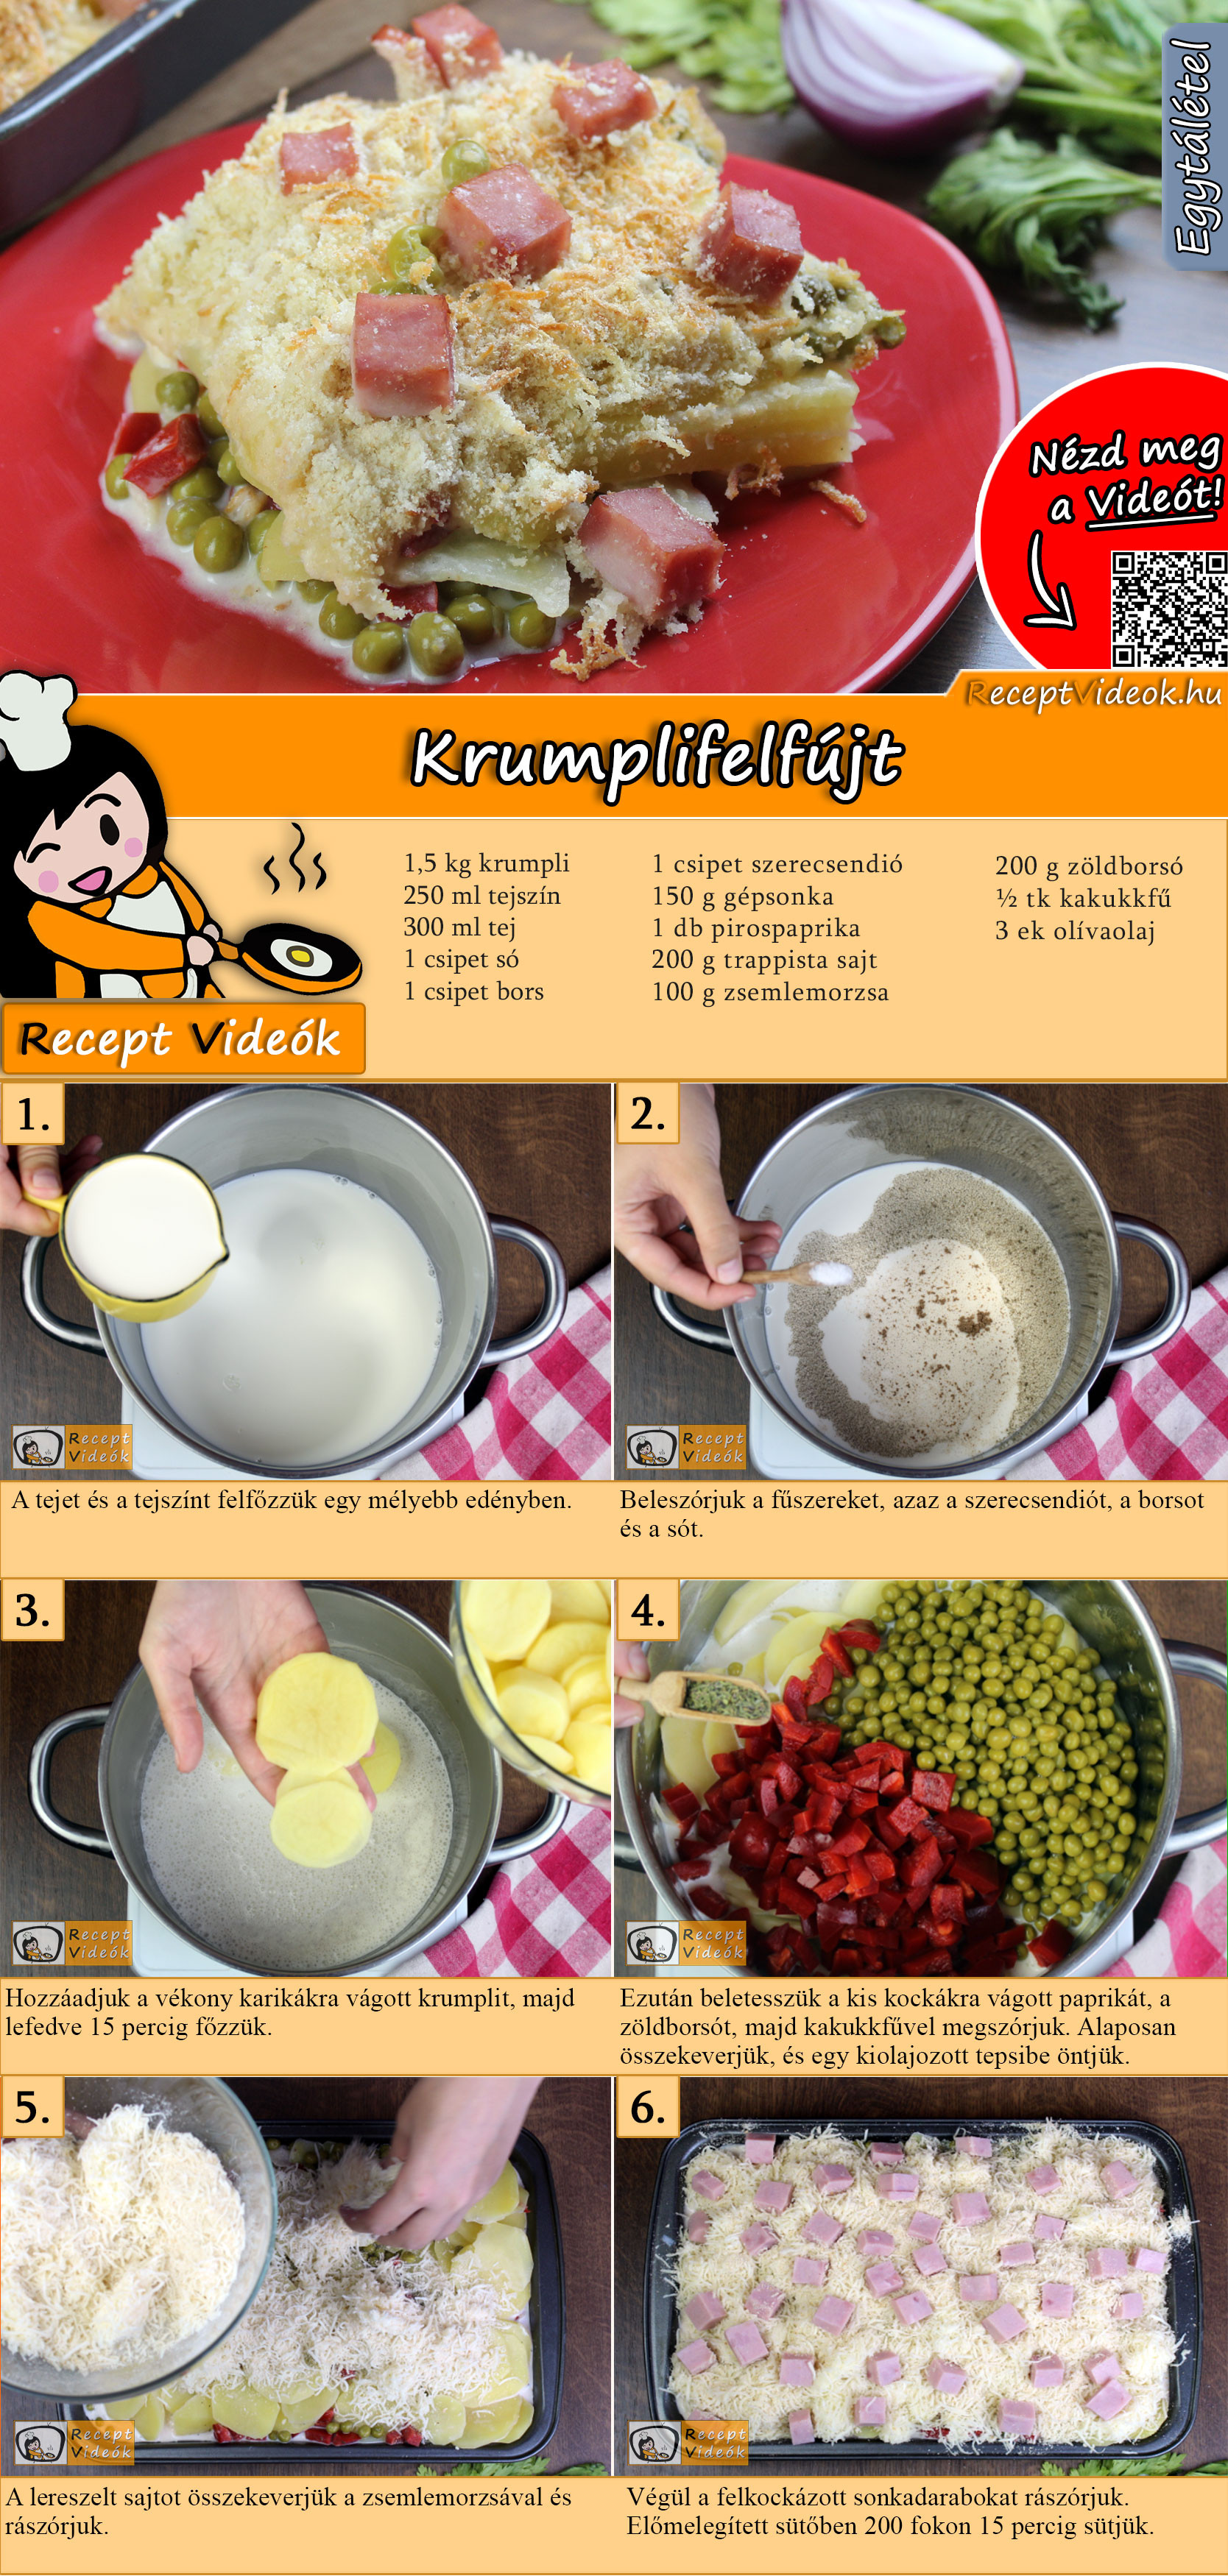 Krumplifelfújt recept elkészítése videóval